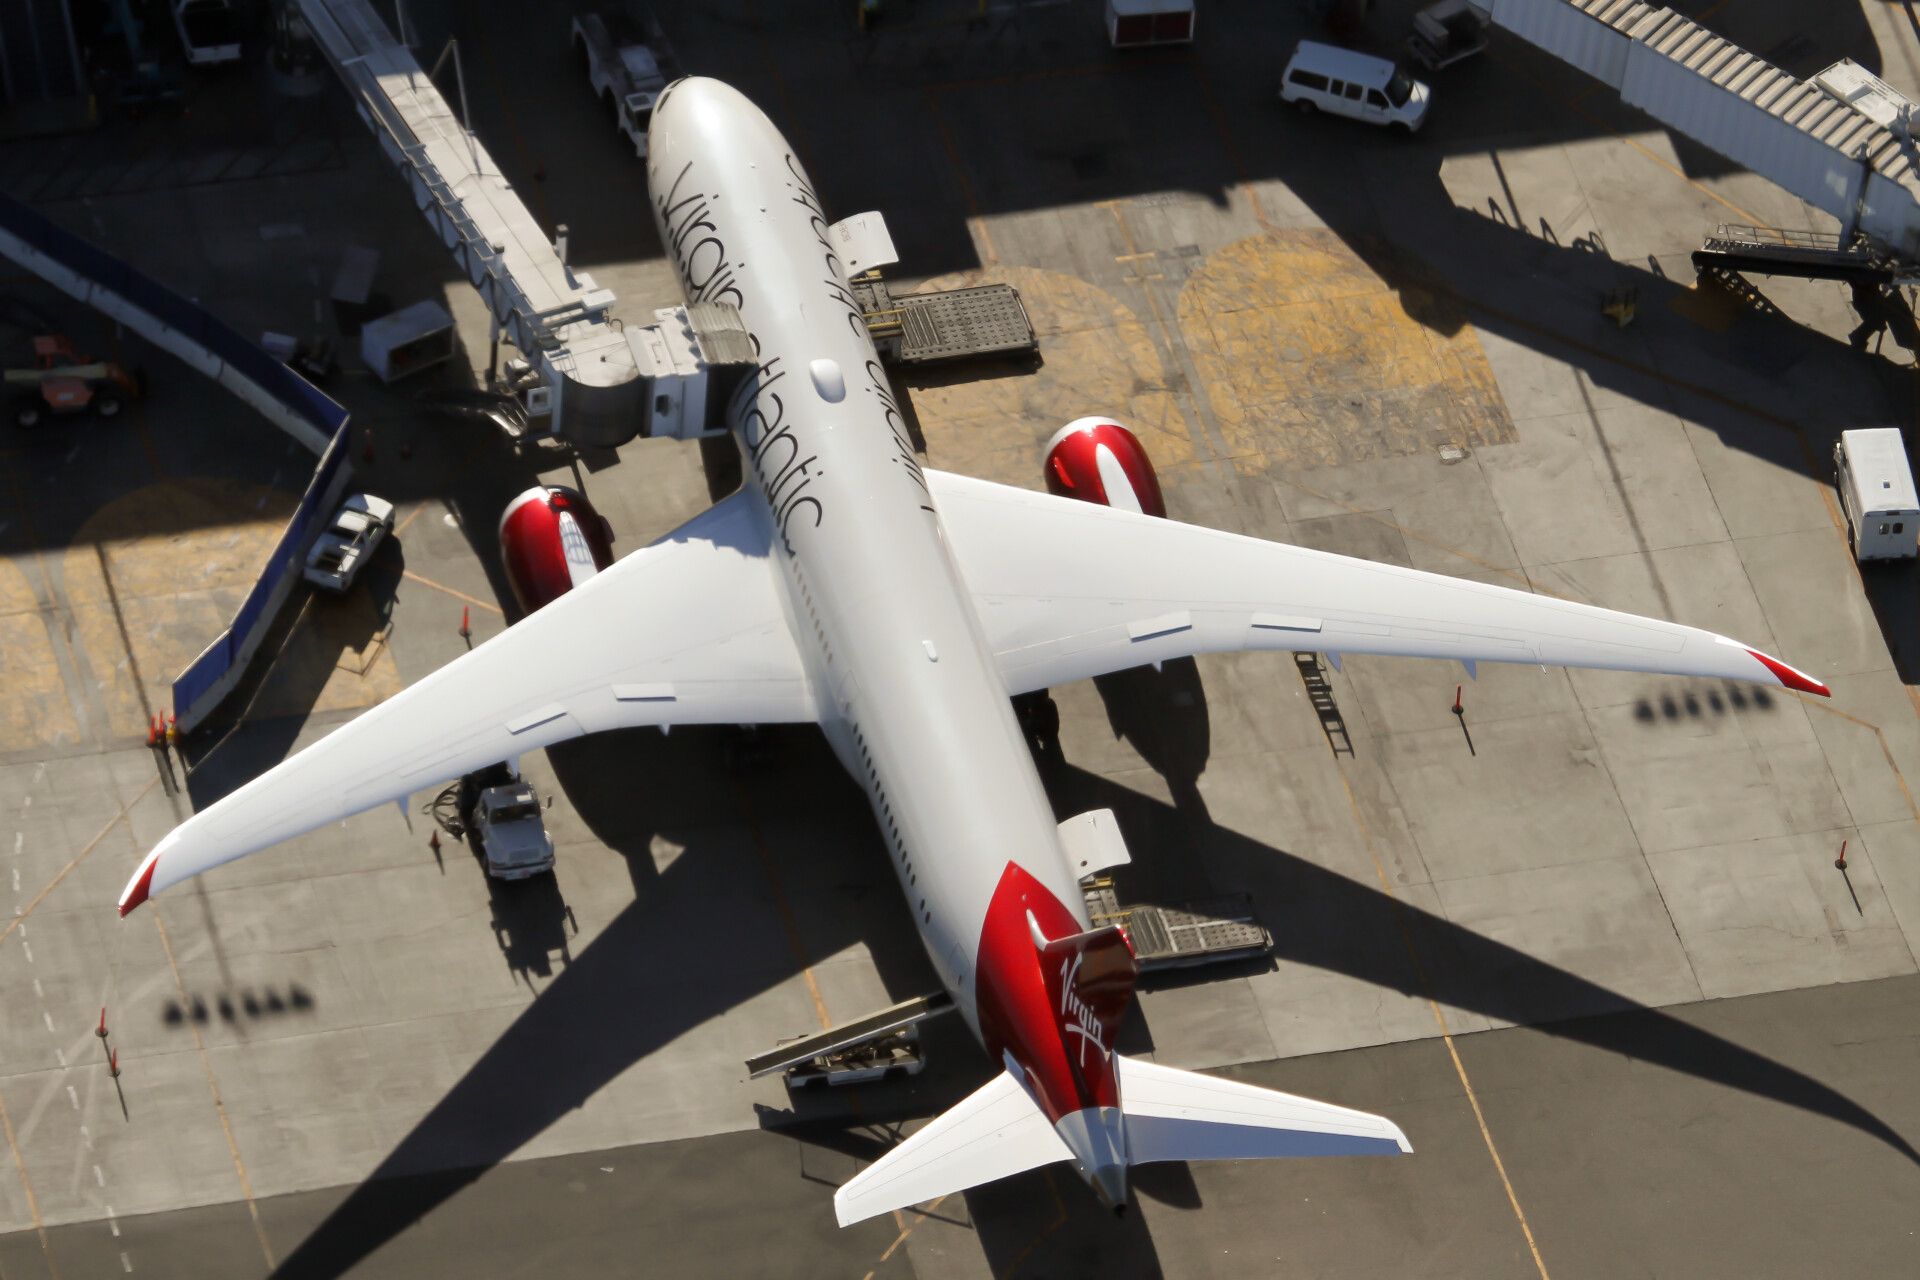 A Virgin Atlantic Airways Boeing 787-9 Dreamliner is parked